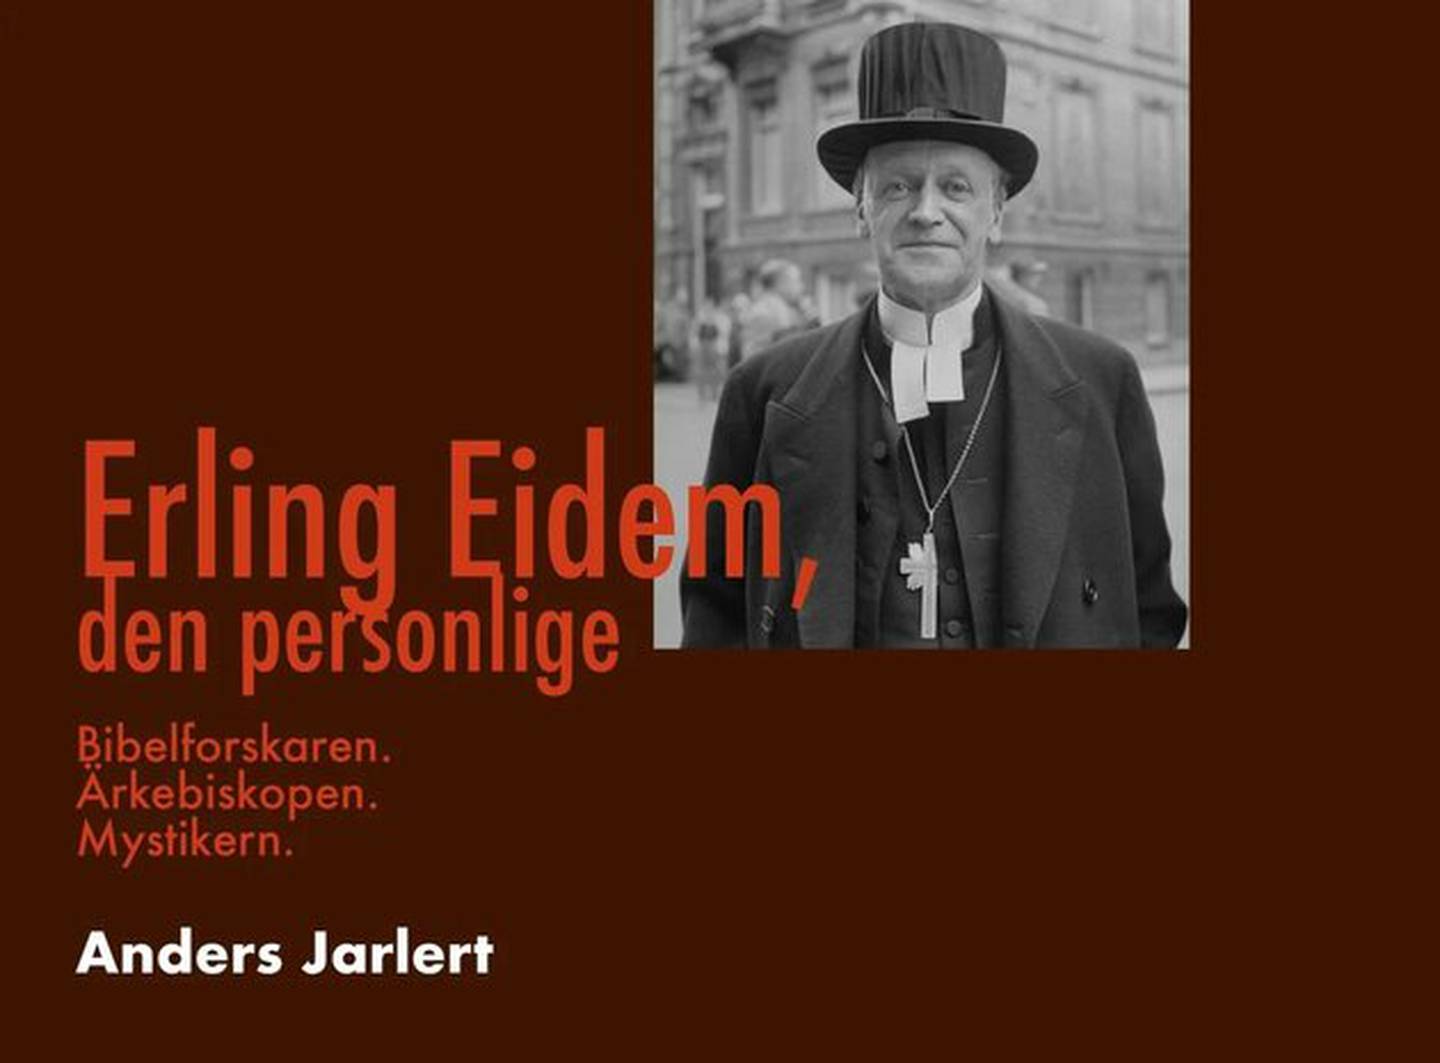 "Erling Eidem, den personlige" av Anders Jarlert.